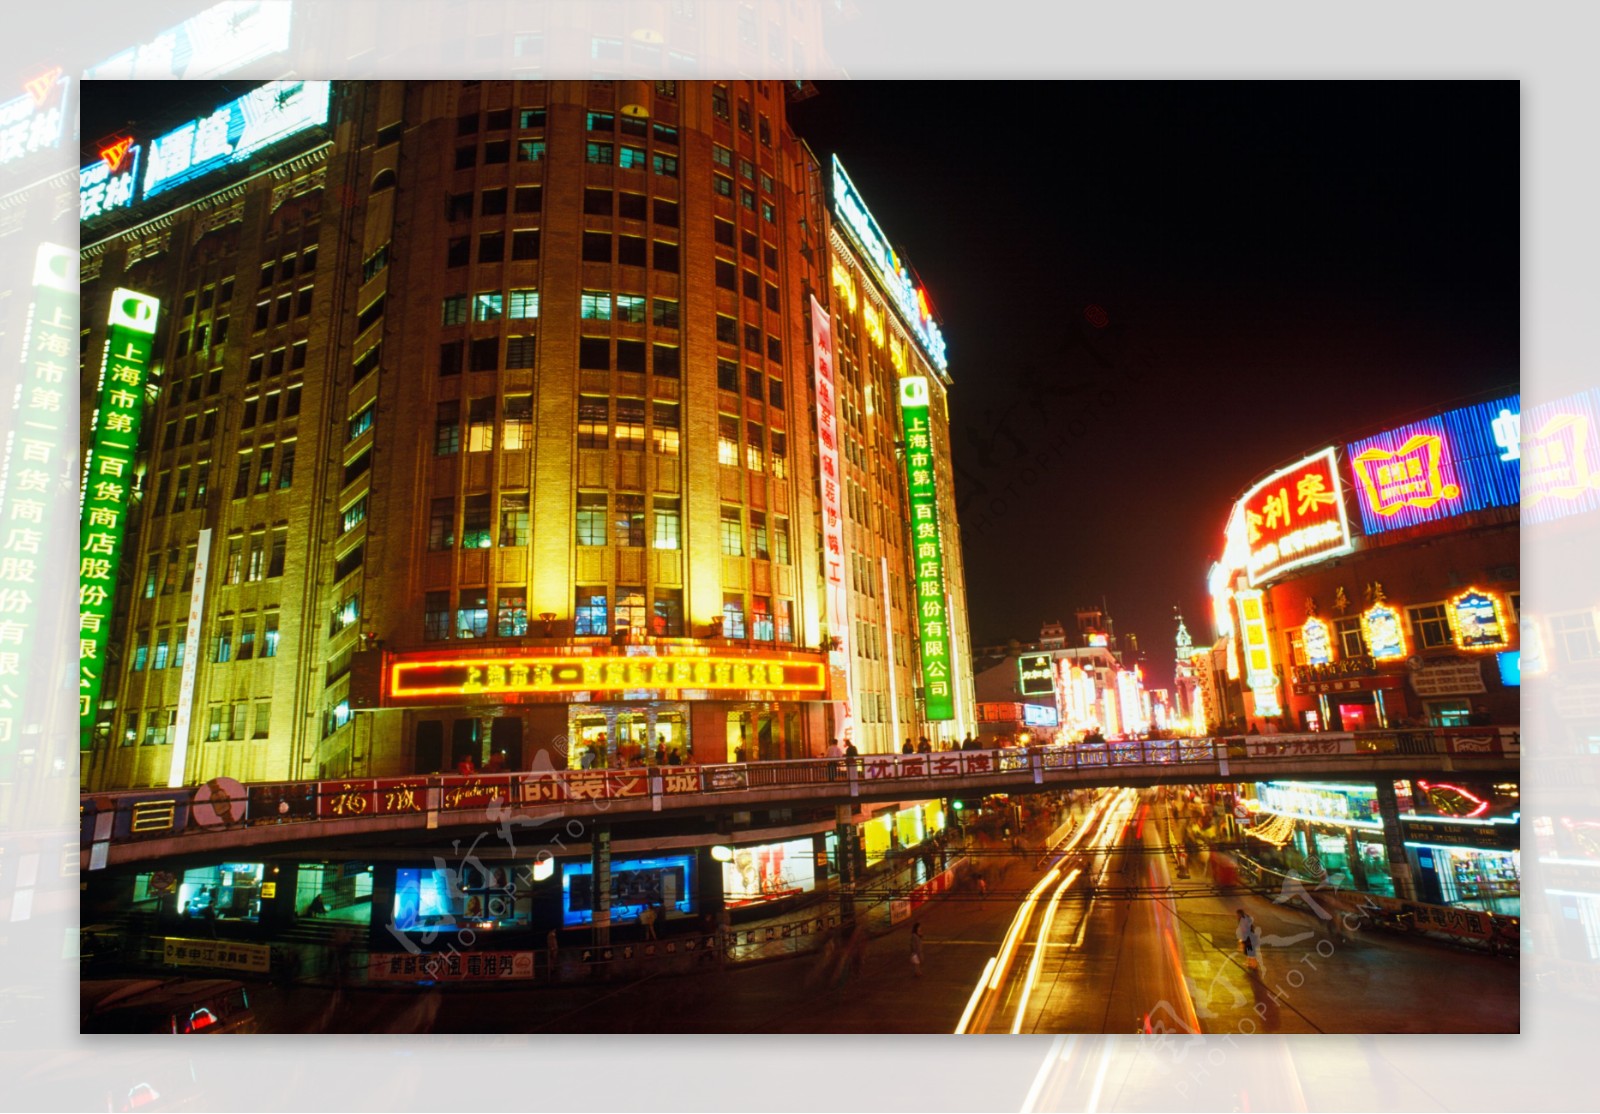 上海第一百货商业中心购物攻略,第一百货商业中心物中心/地址/电话/营业时间【携程攻略】